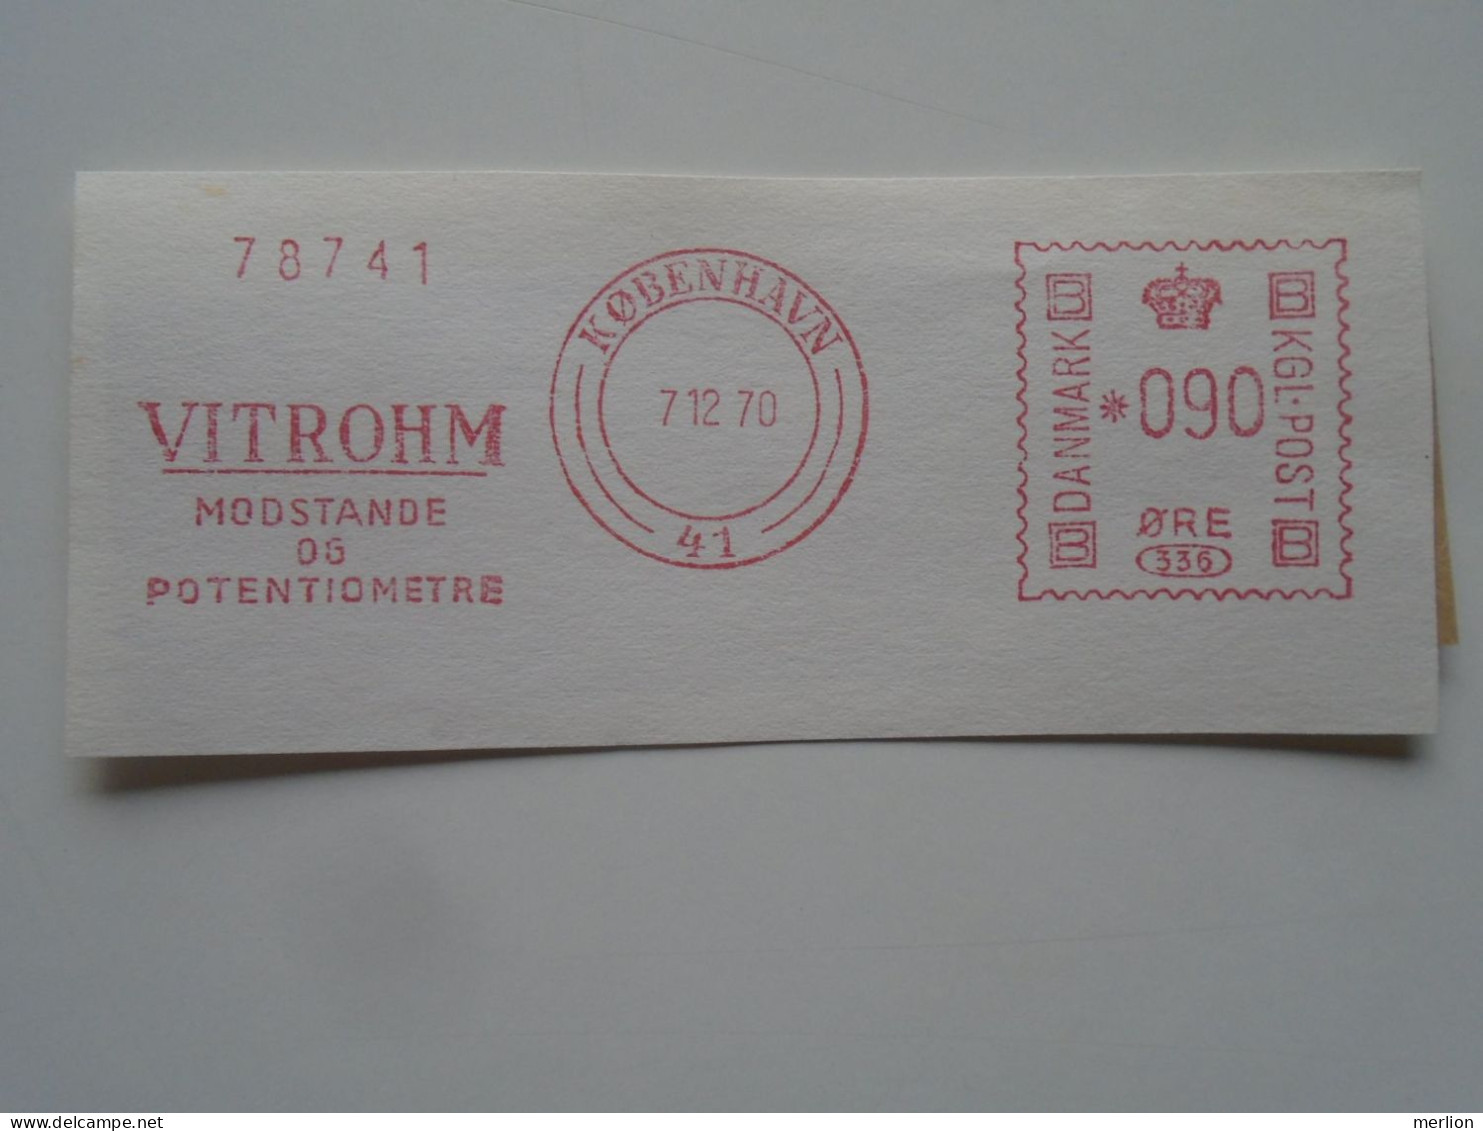 D200476   Red  Meter Stamp Cut- EMA - Freistempel  - Denmark -Danmark -  1970 Kobenhavn - VITROHM -Electro - Maschinenstempel (EMA)